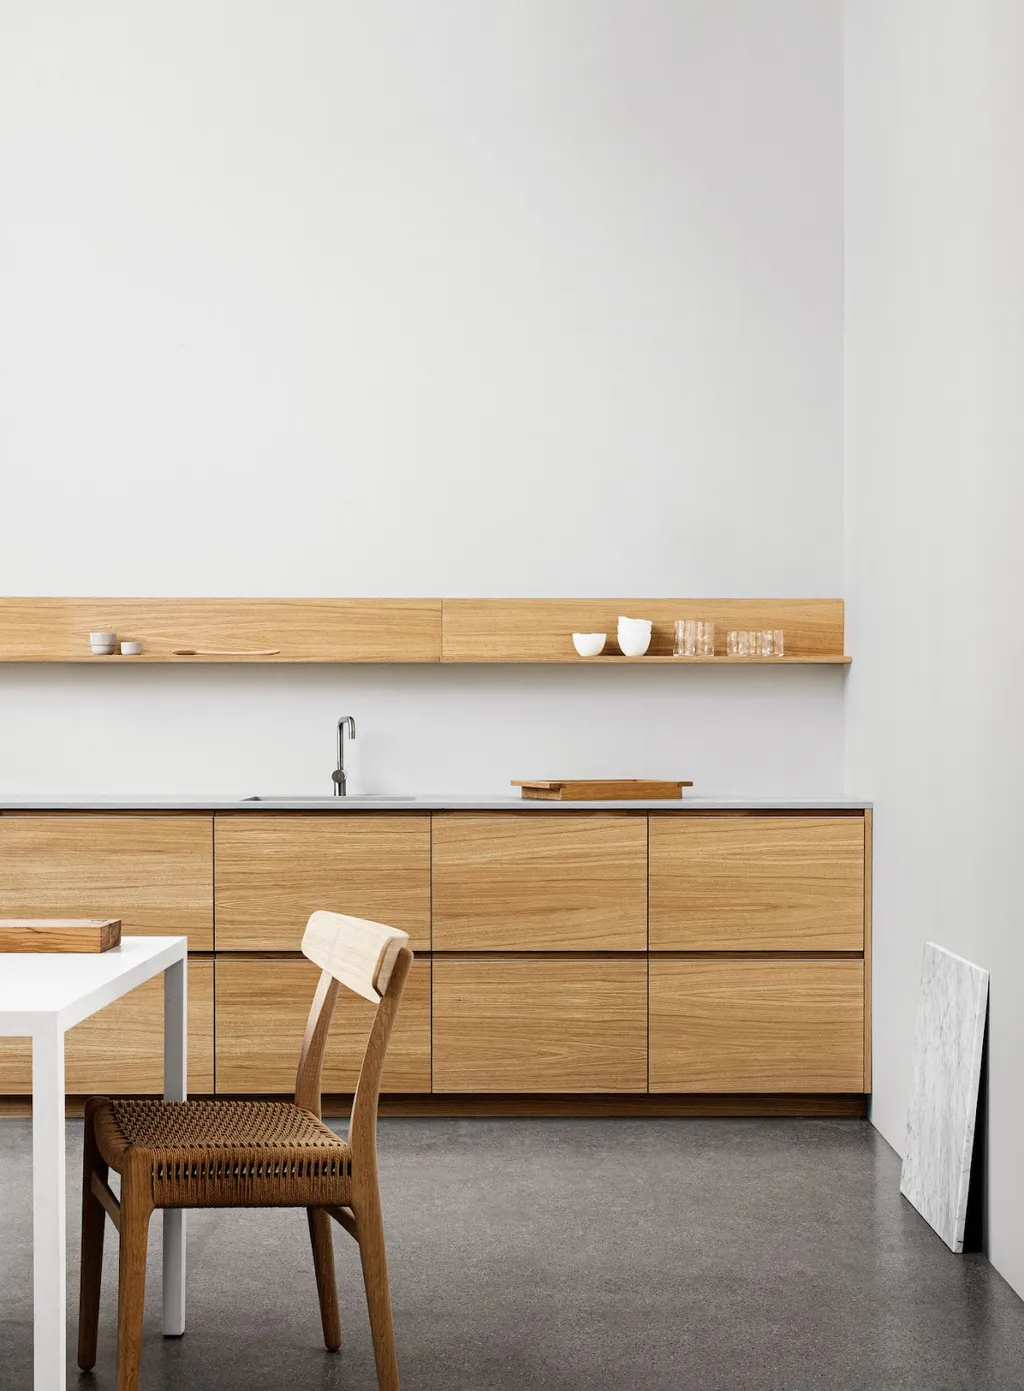 Tủ bếp phong cách tối giản (minimalist) với chất liệu gỗ